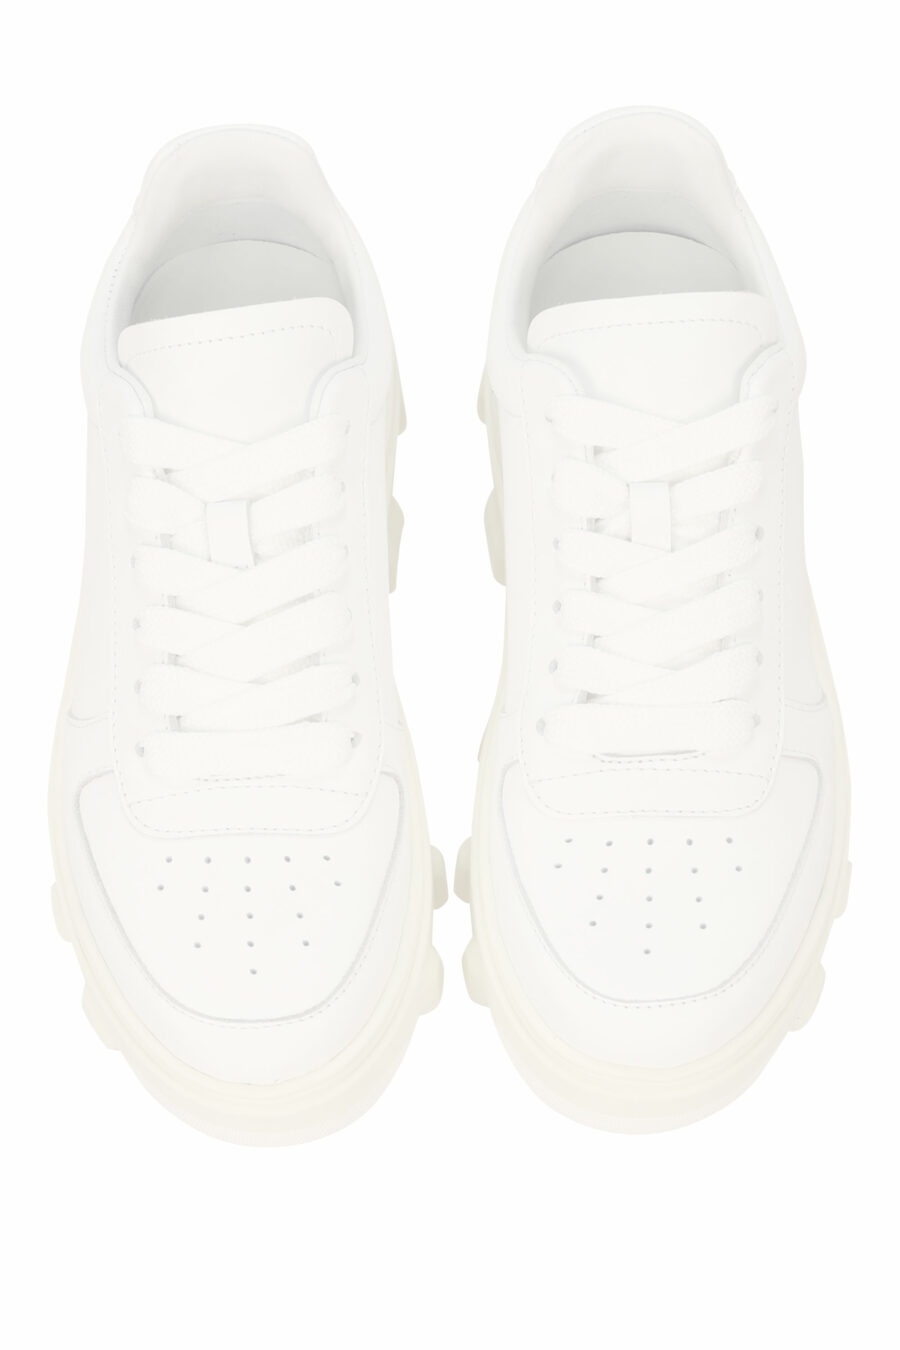 Zapatillas blancas con suela blanca y logo - 8055777311240 4